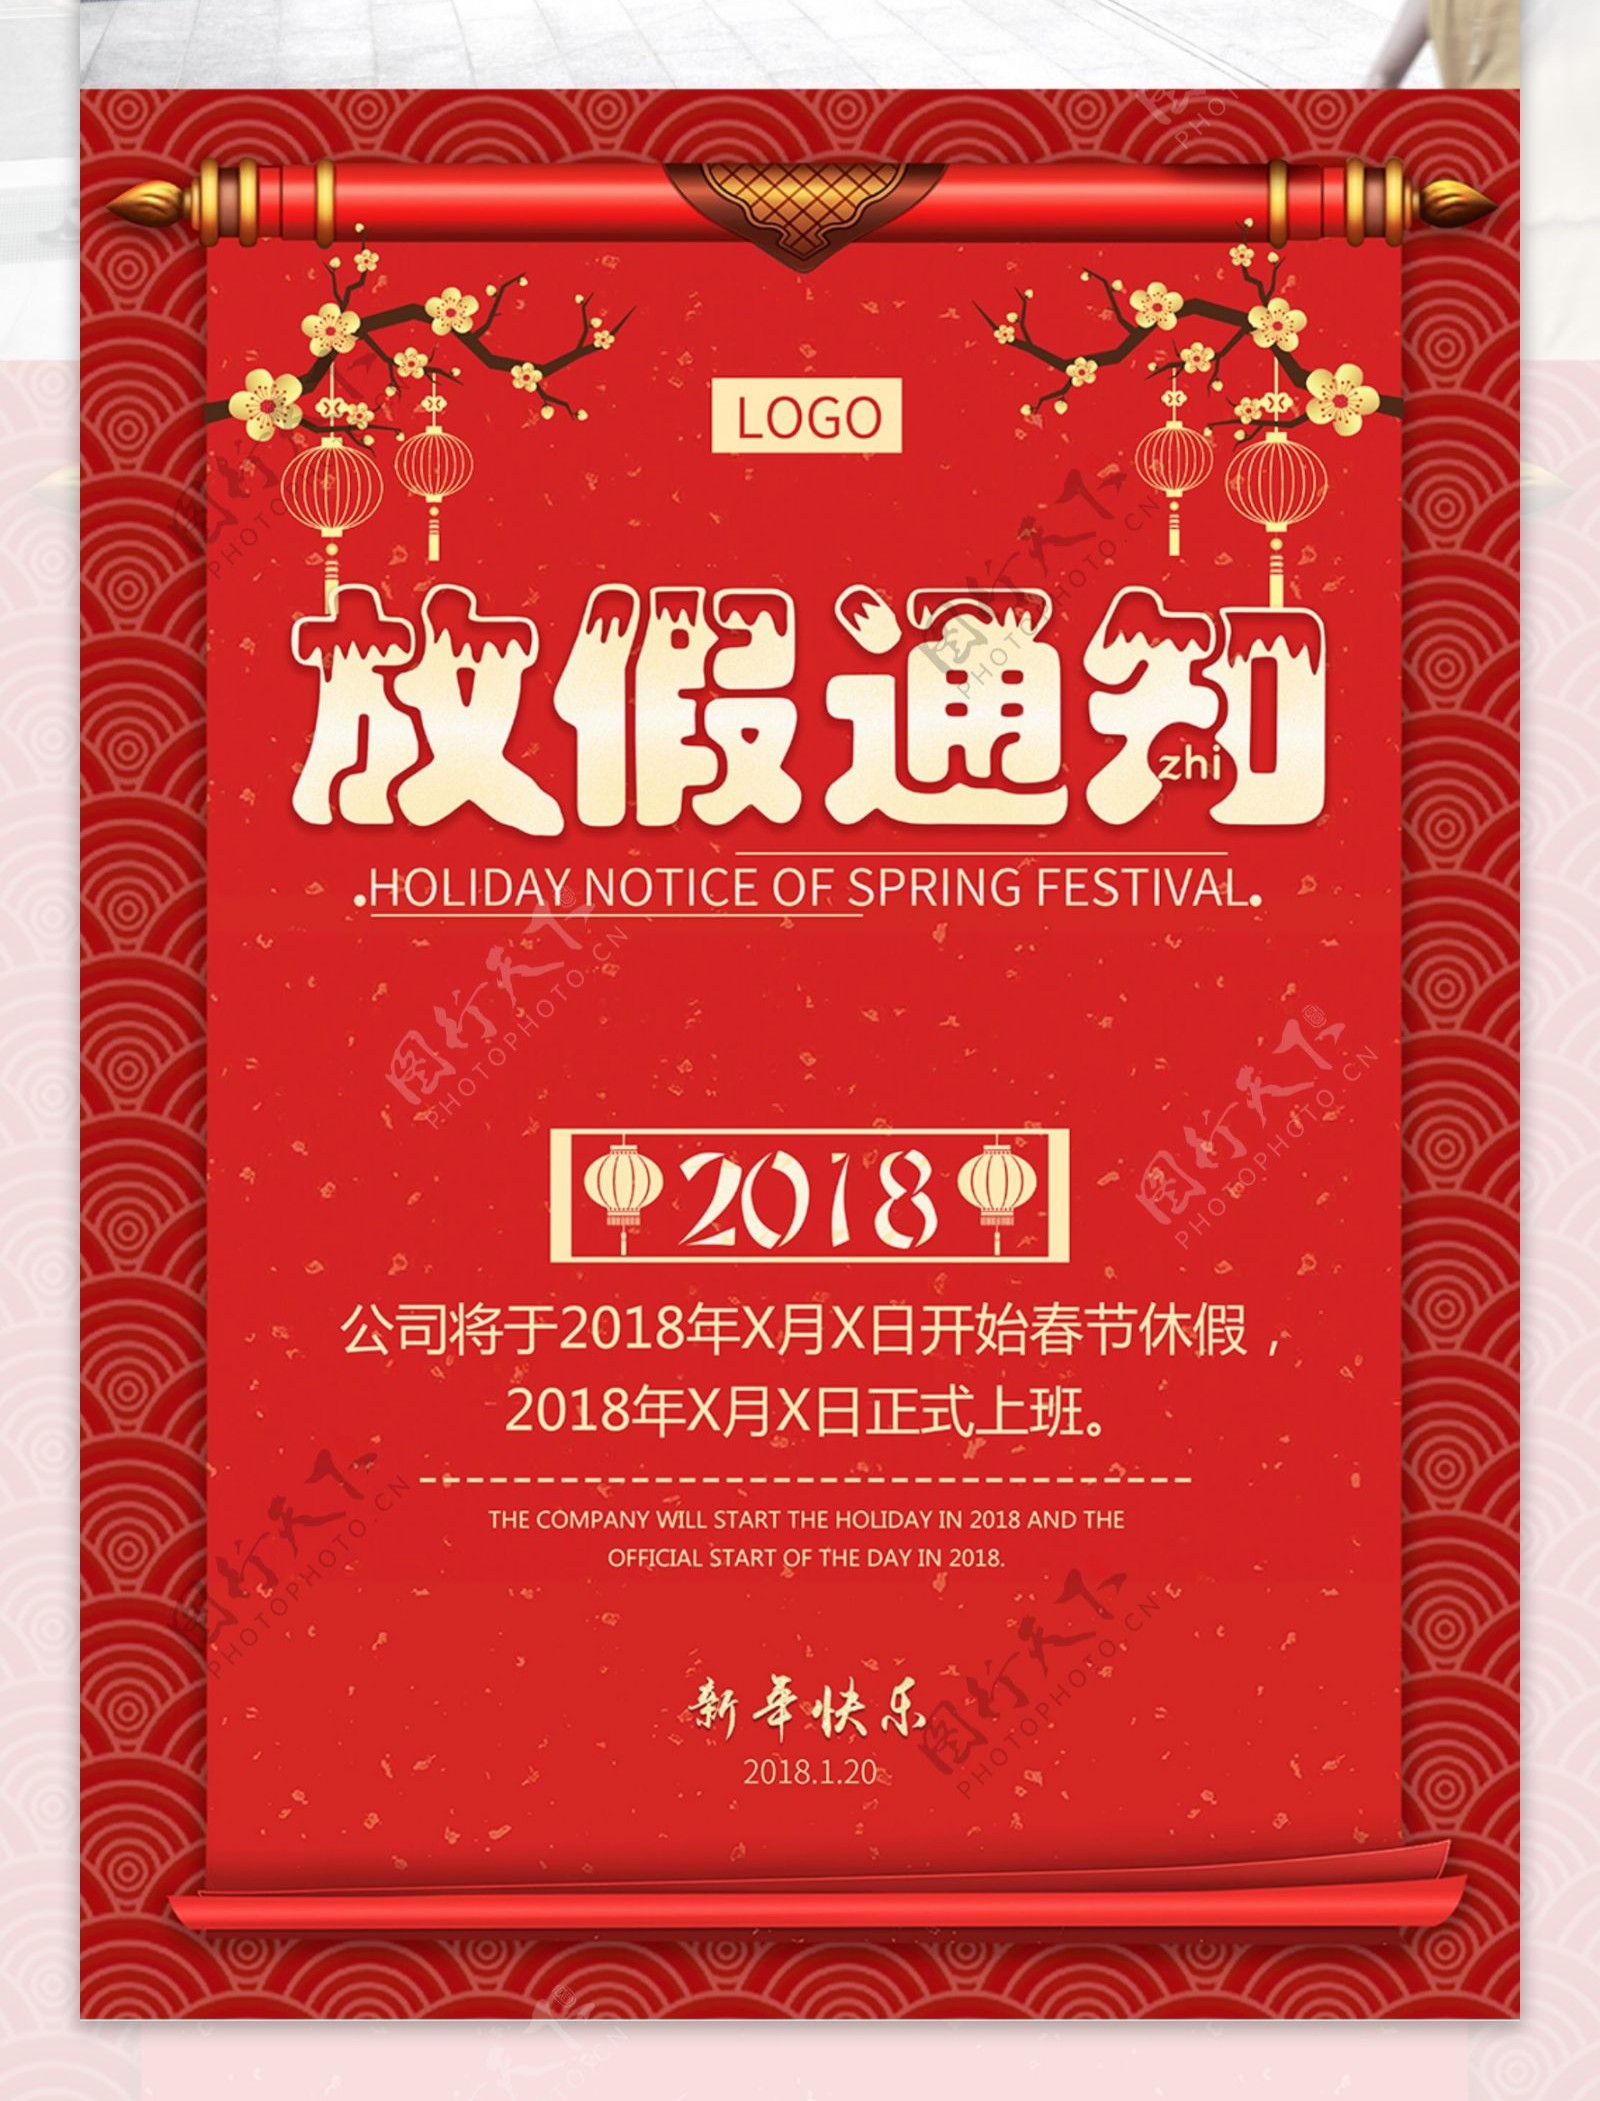 大红喜庆春节放假通知宣传海报